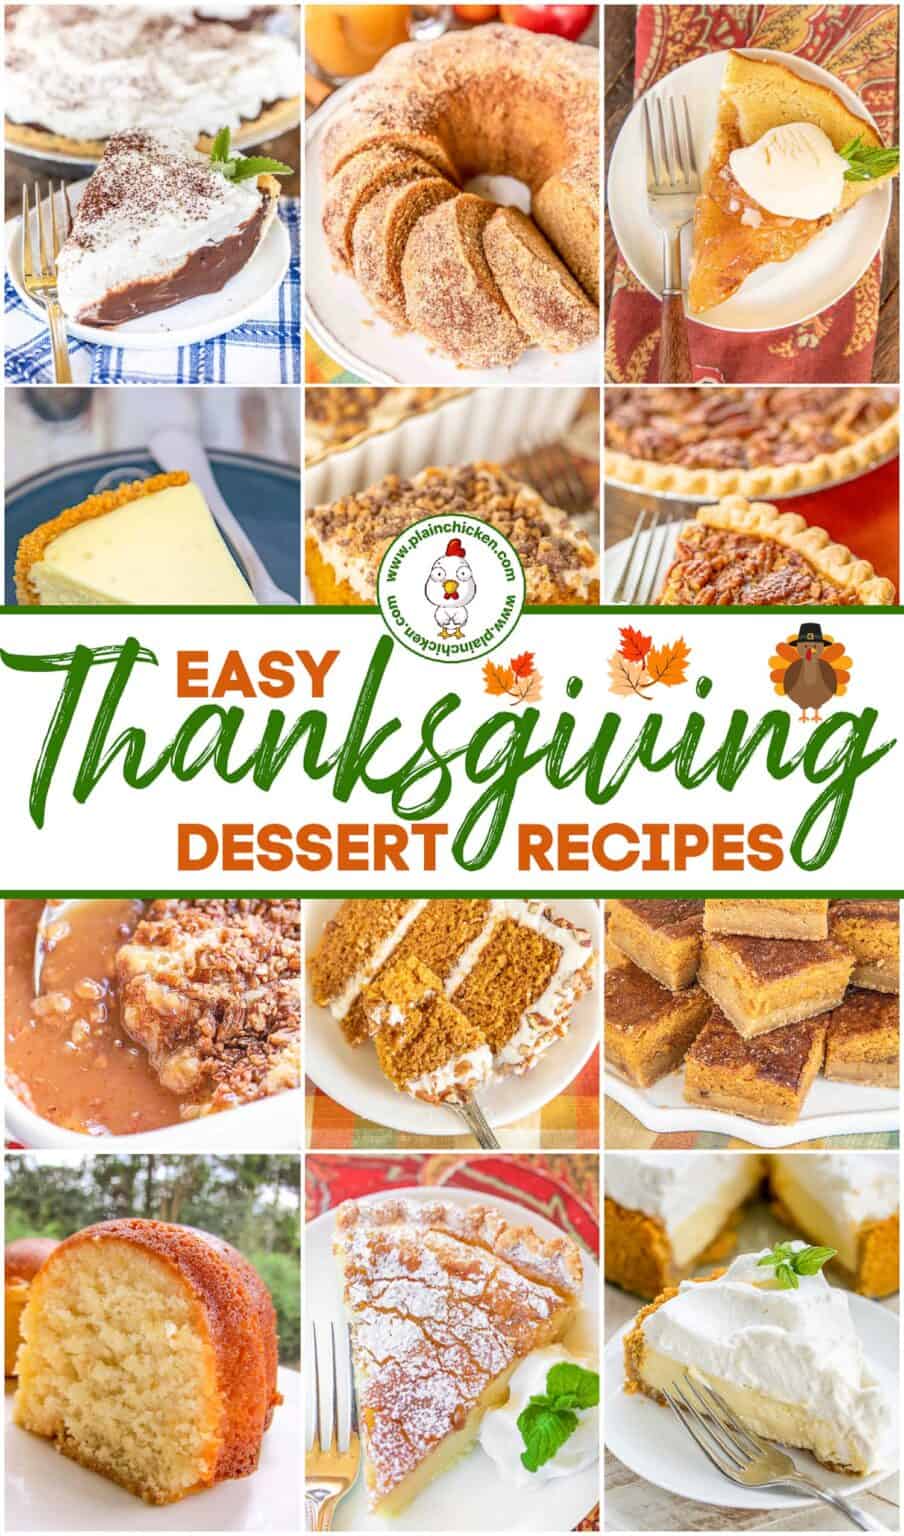 Easy Thanksgiving Desserts - Plain Chicken